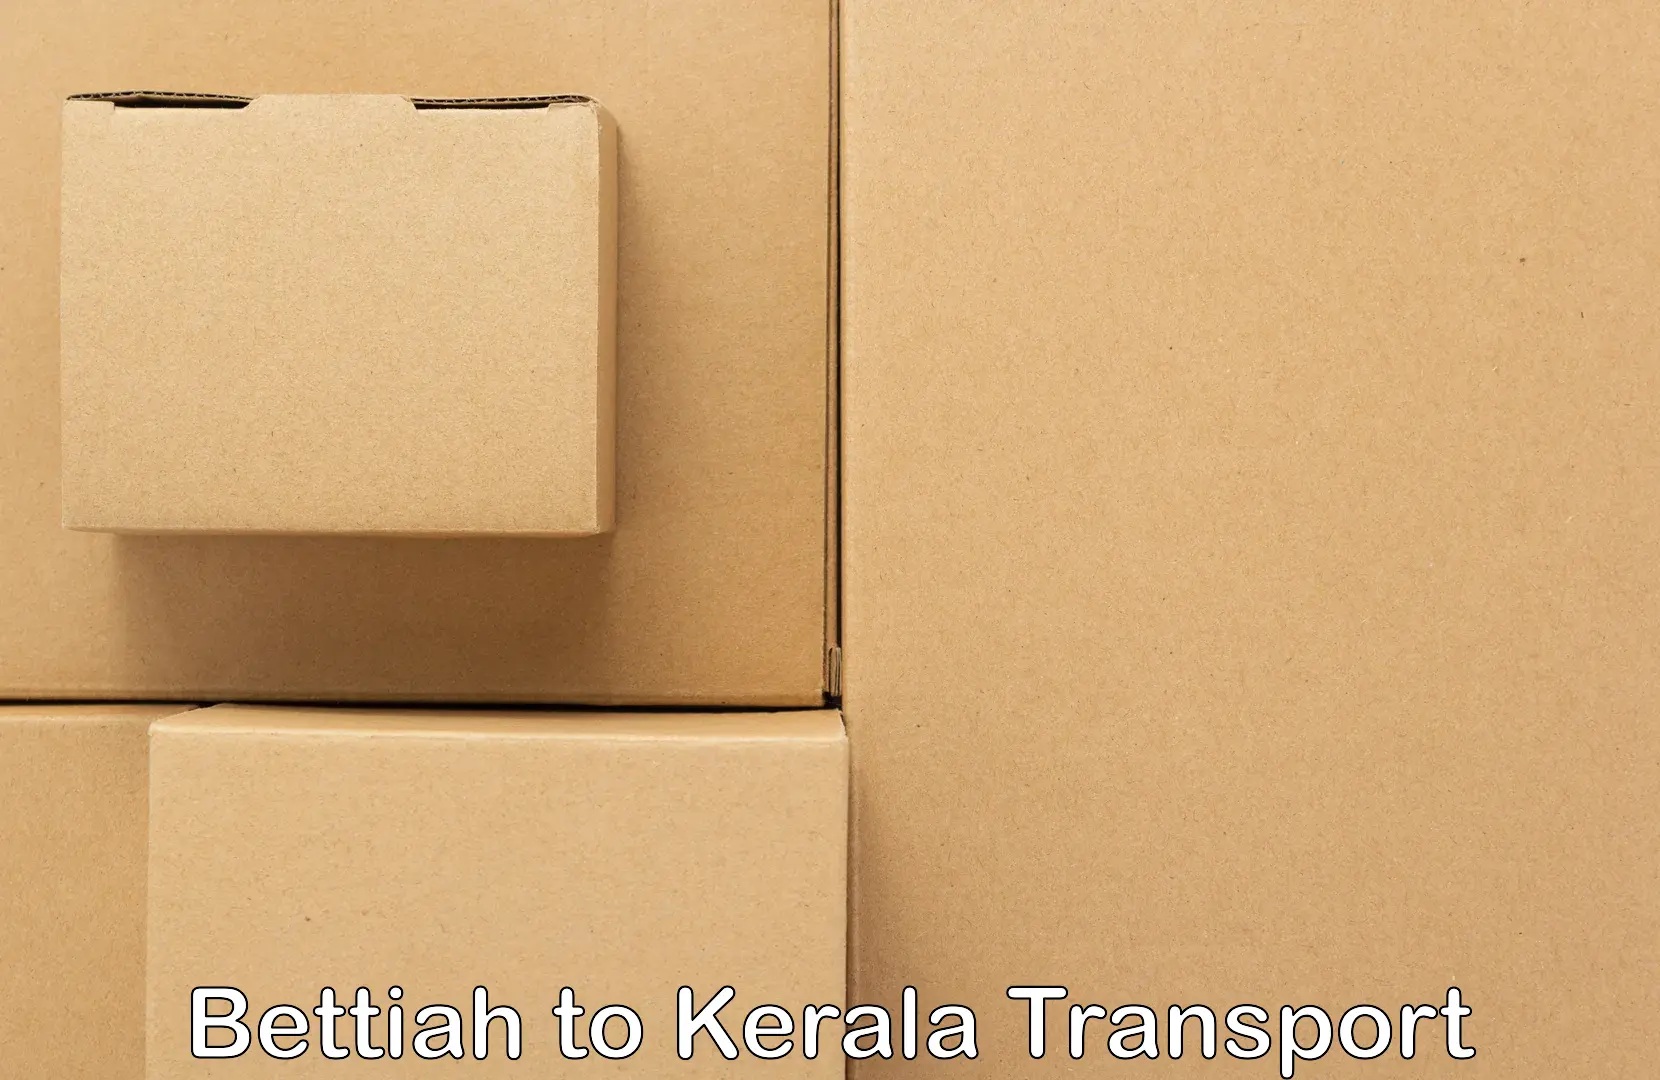 Online transport service Bettiah to Alappuzha